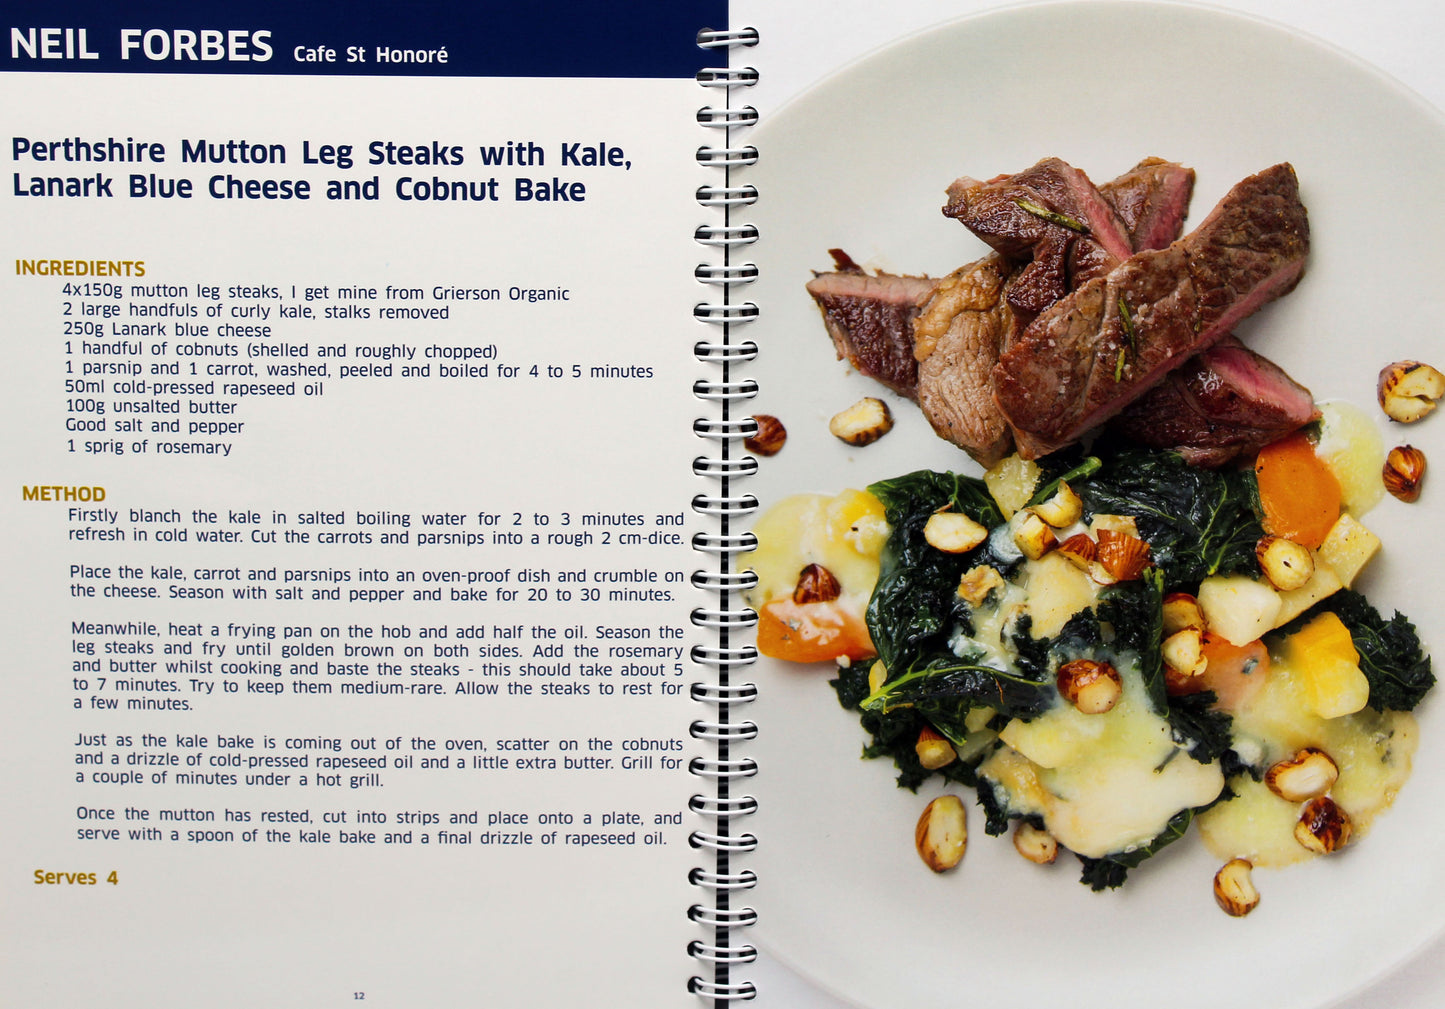 SWI Cookbook